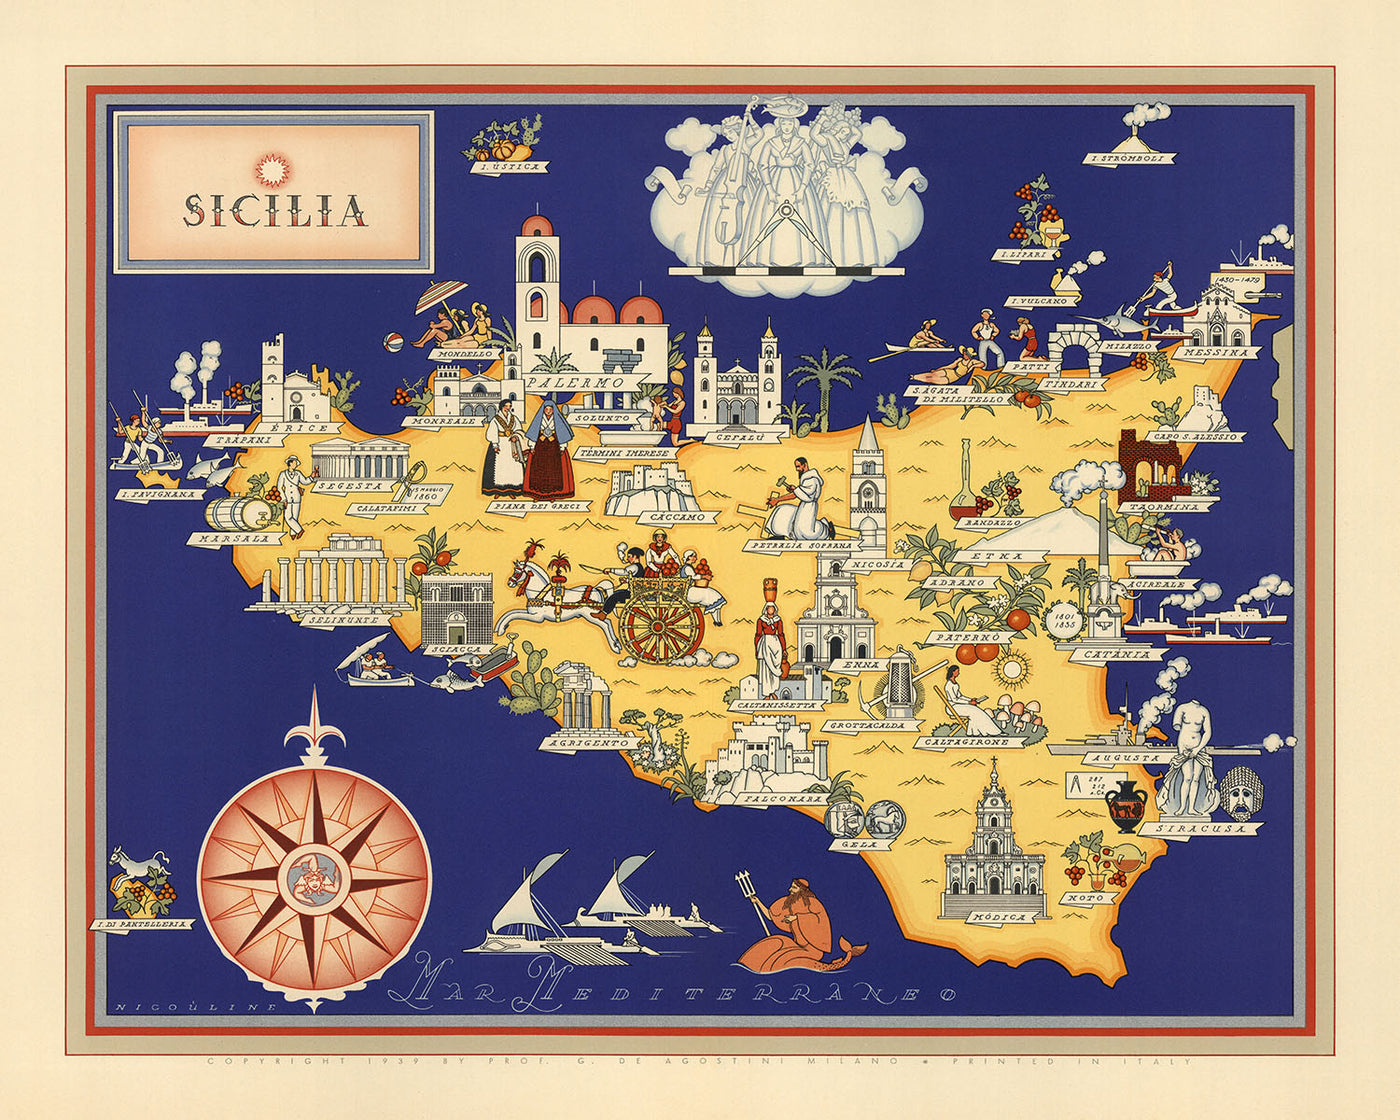 Alte Bildkarte von Sizilien von De Agostini, 1938: Palermo, Catania, Messina, Parco Nazionale dell'Etna, Parco Nazionale dei Nebrodi